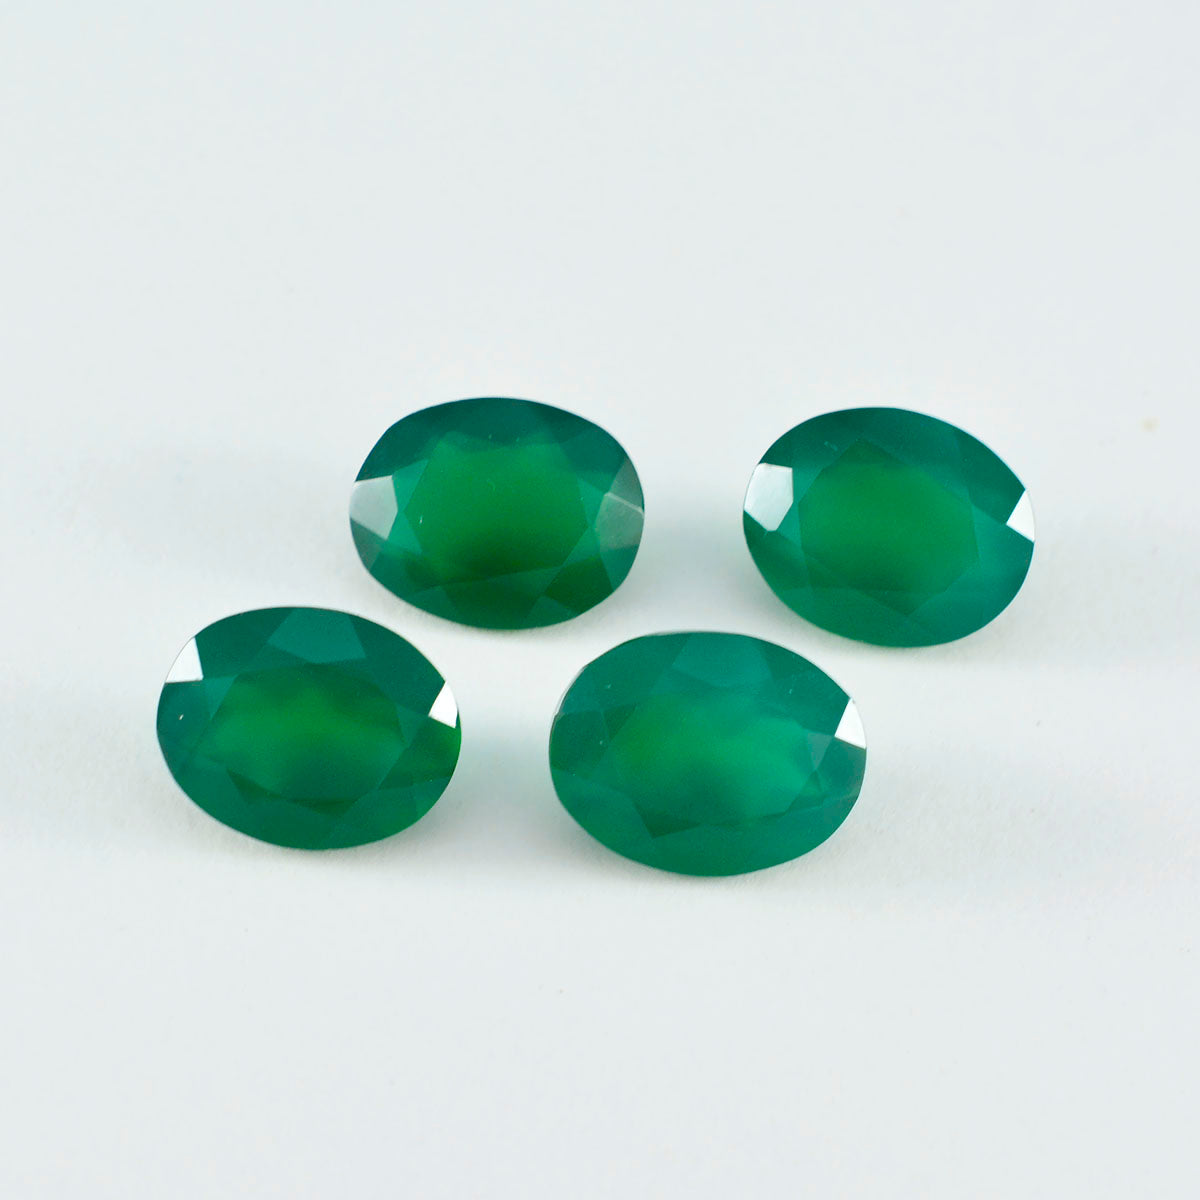 riyogems 1pc 本物のグリーン オニキス ファセット 7x9 mm 楕円形のハンサムな品質の宝石